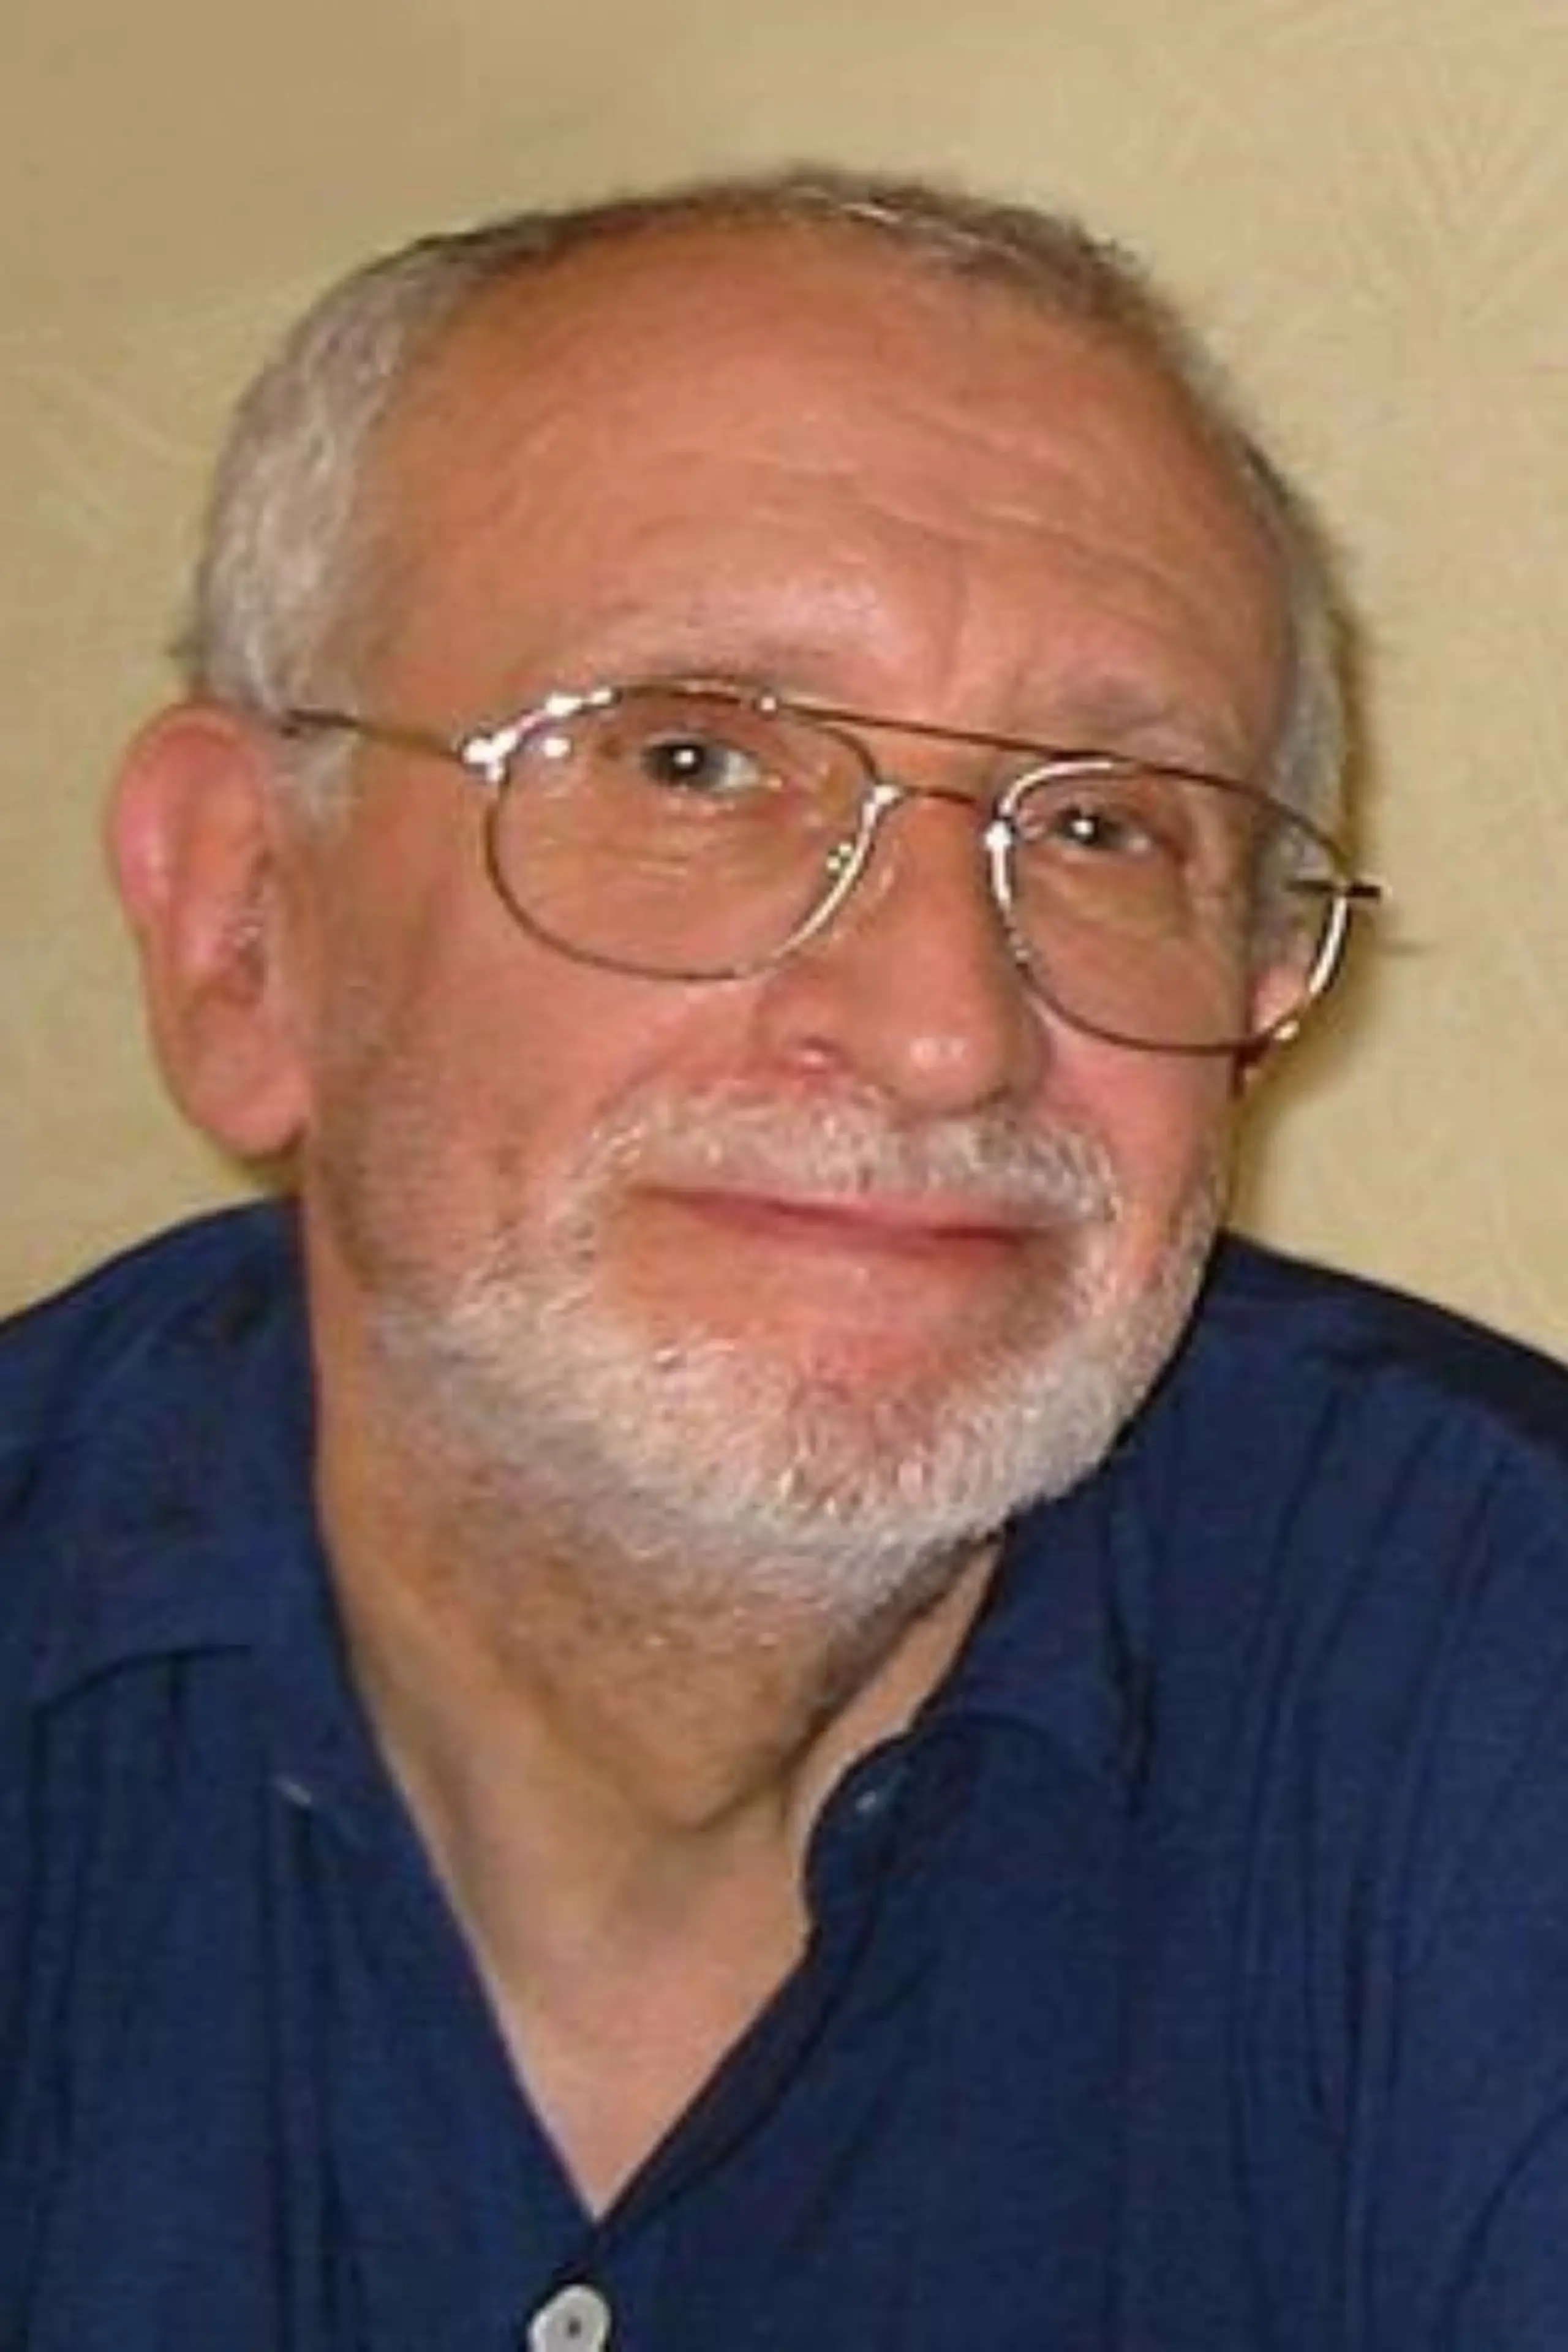 Michel Mardore